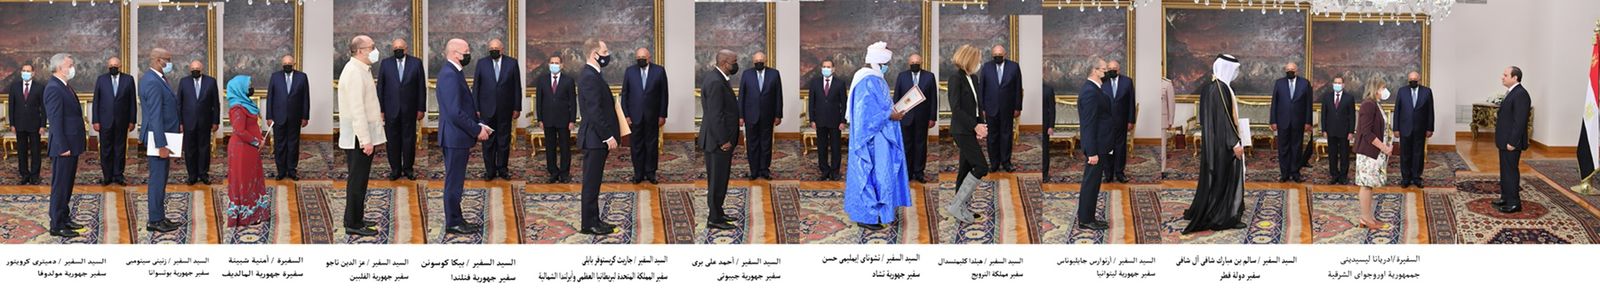 الرئيس السيسي يتسلم أوراق اعتماد أربعة وعشرين سفيرًا جديداً (1)